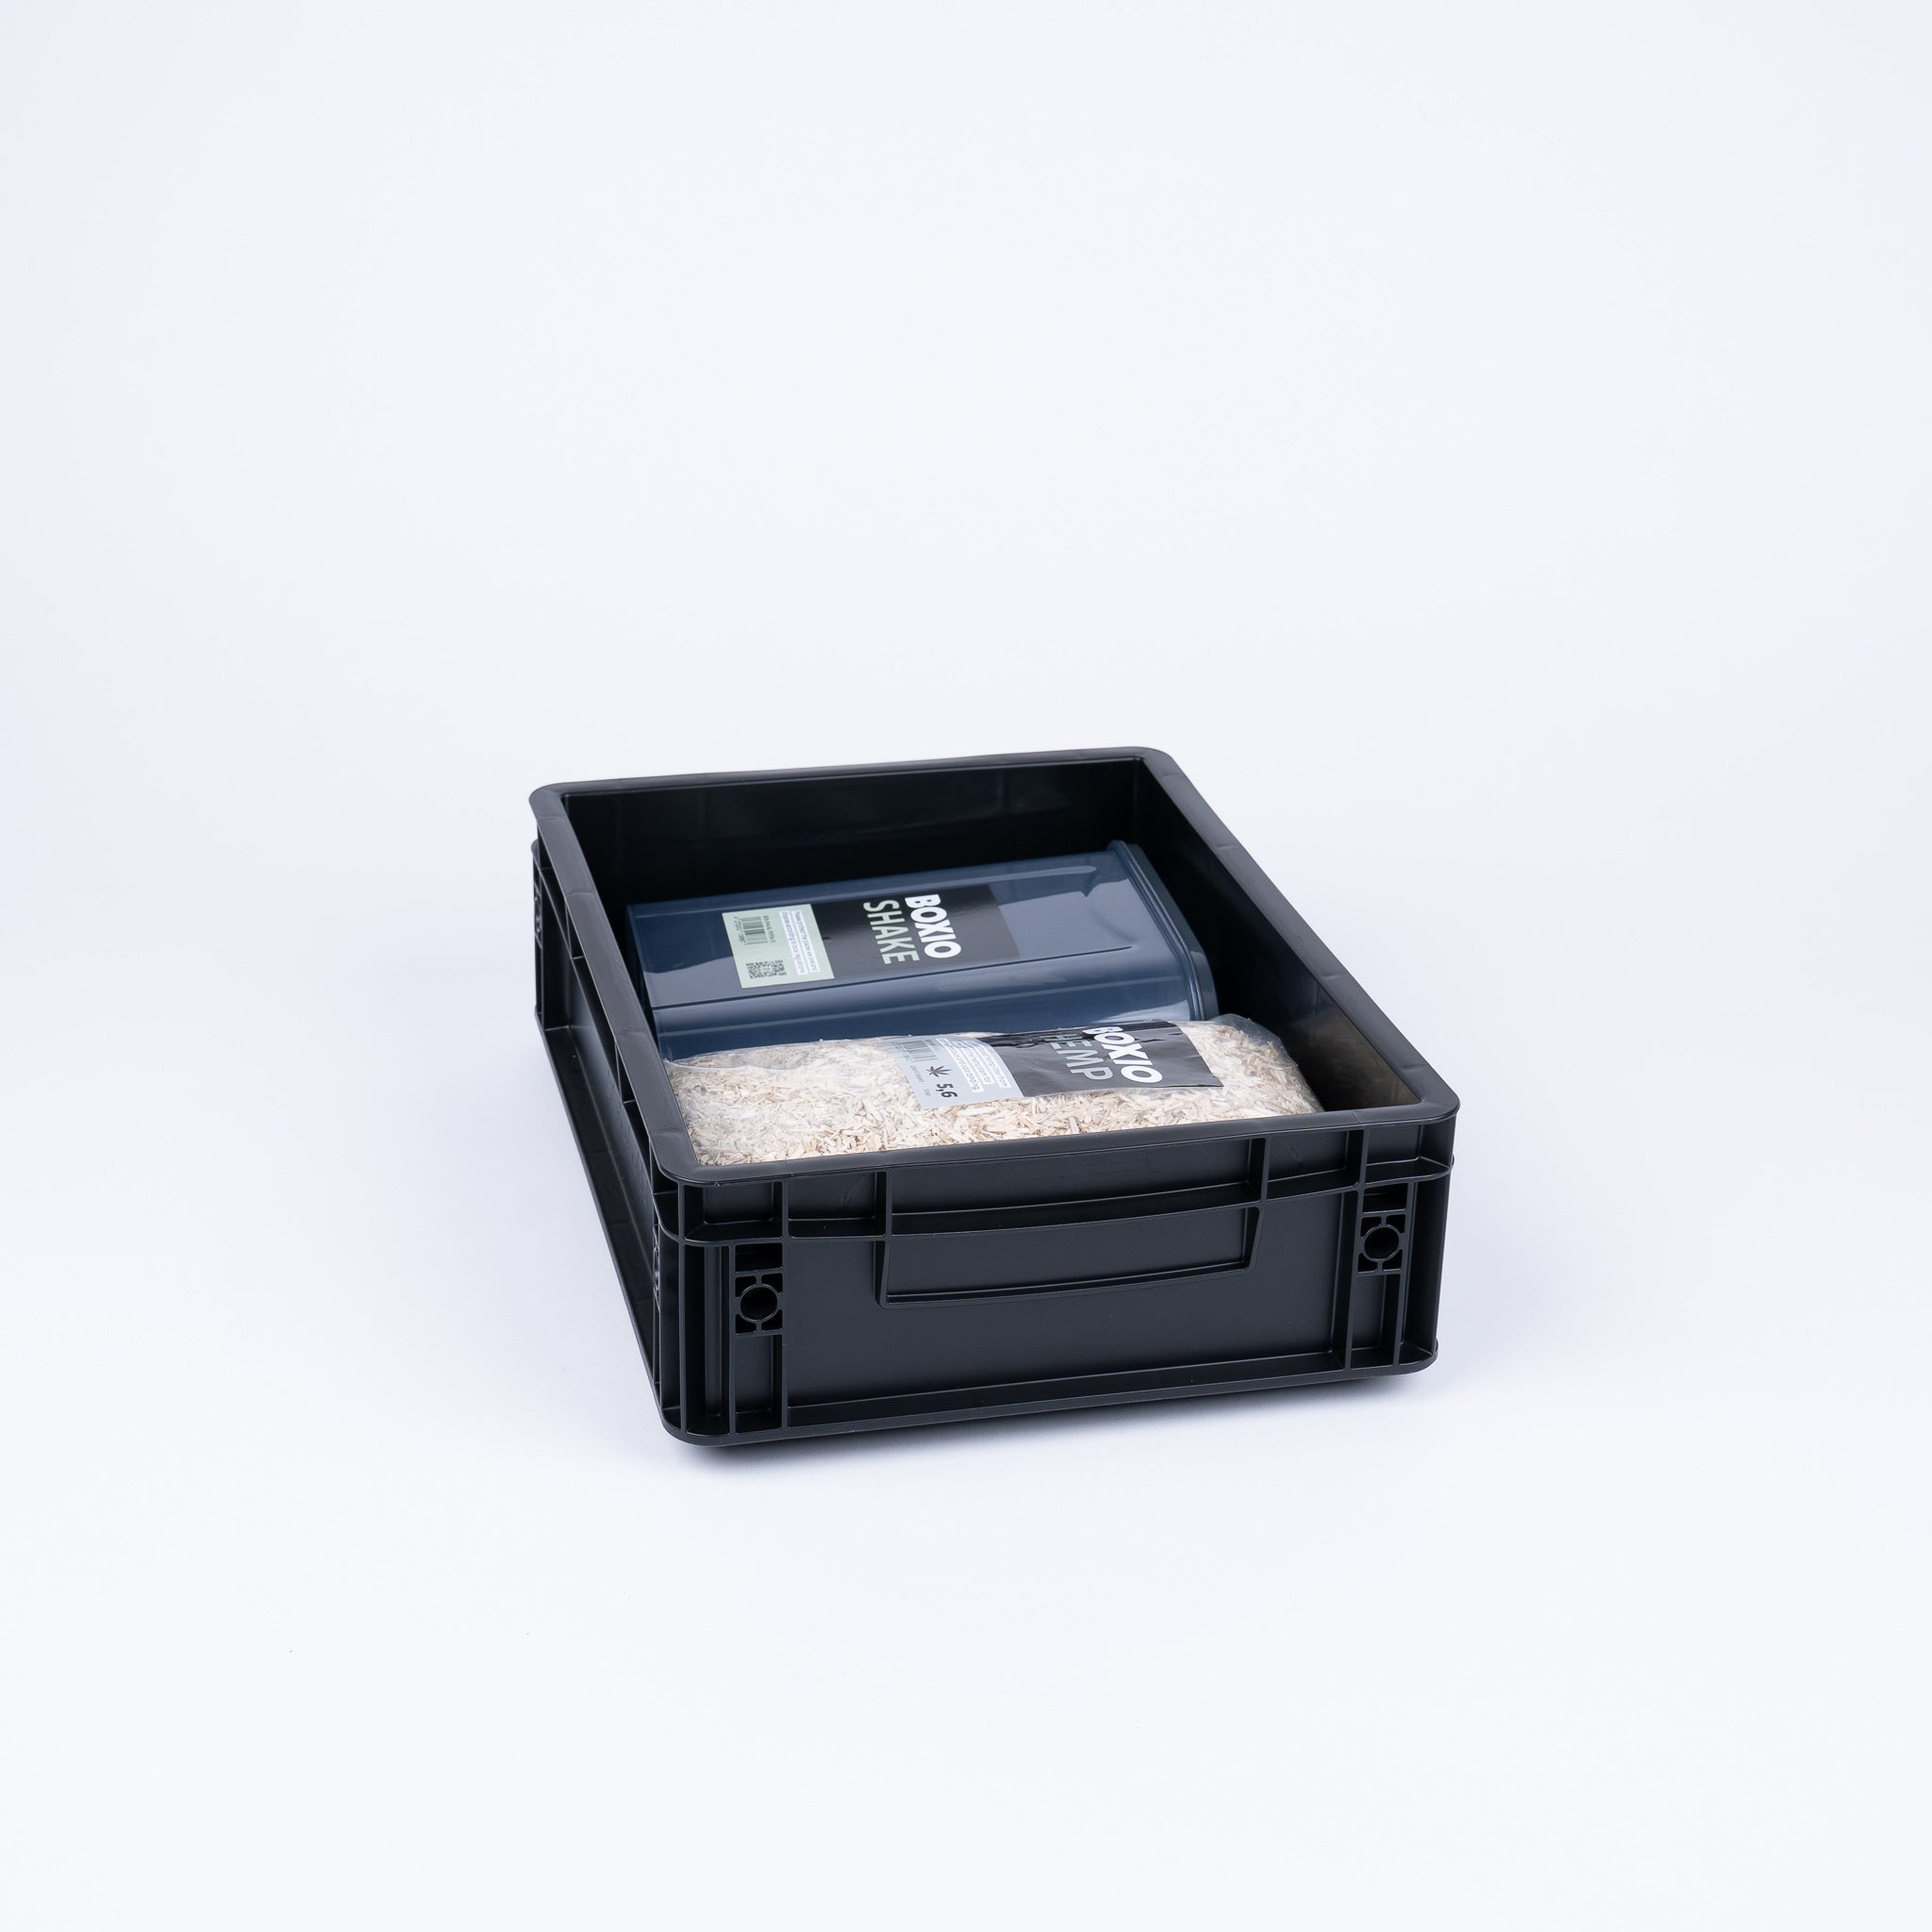 BOXIO SANITARIO - Set completo con inodoro desviador de orina, lavabo móvil y accesorios